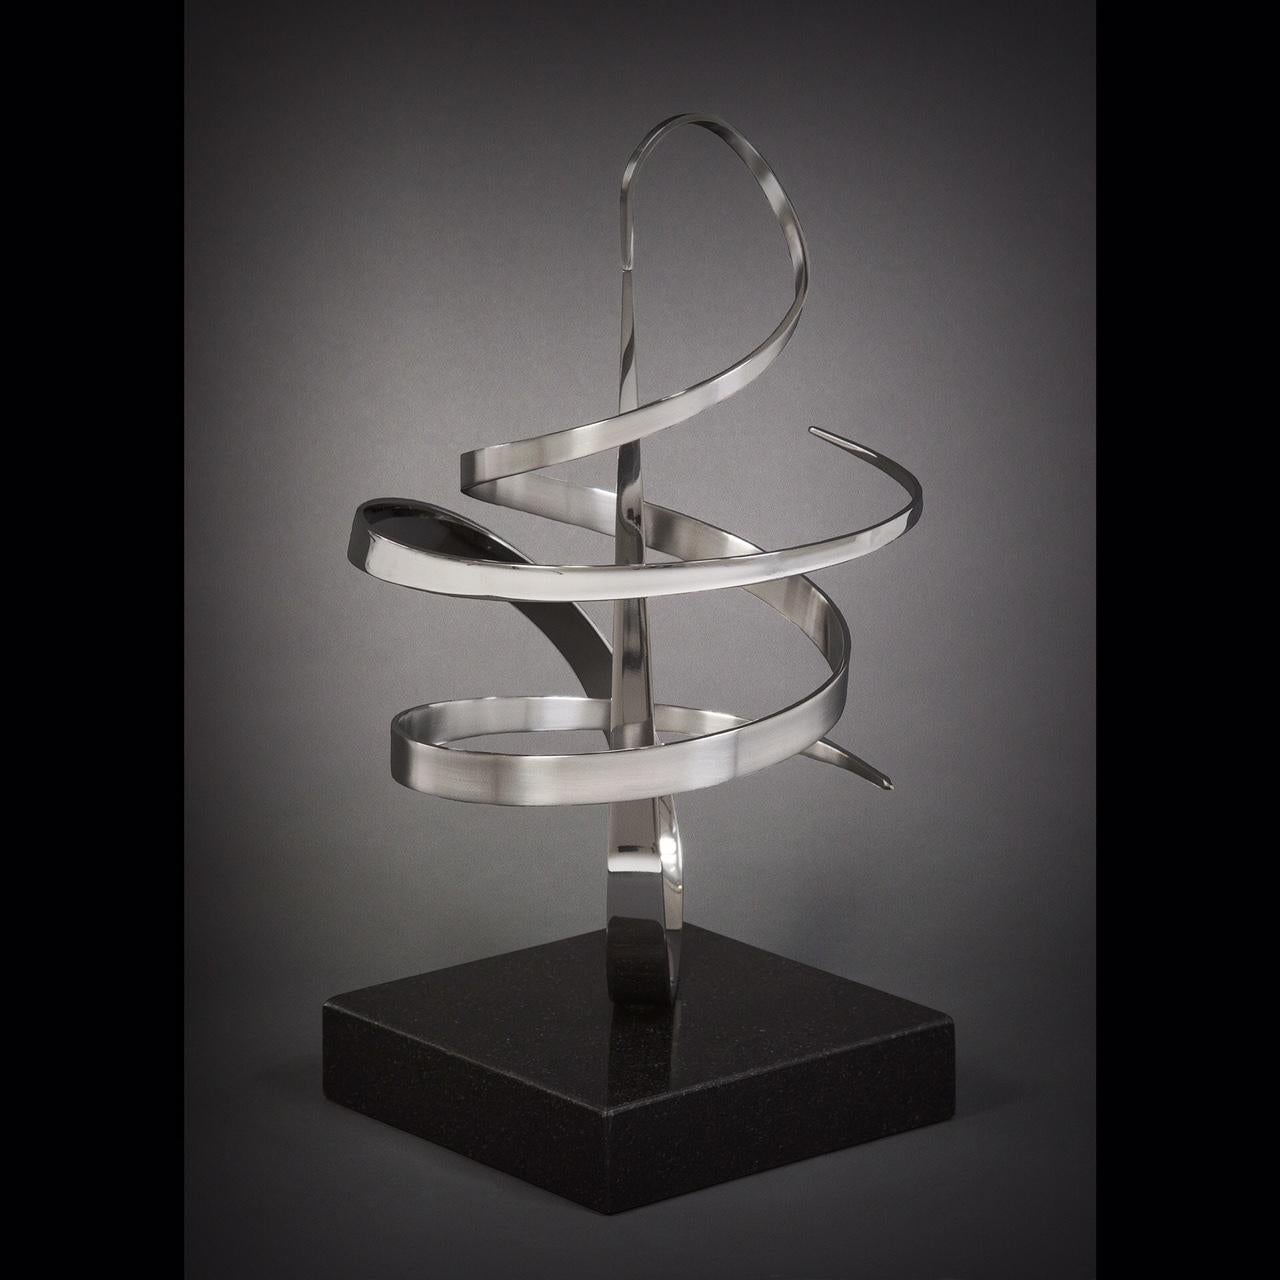 Gary Traczyk Abstract Sculpture - Orbit